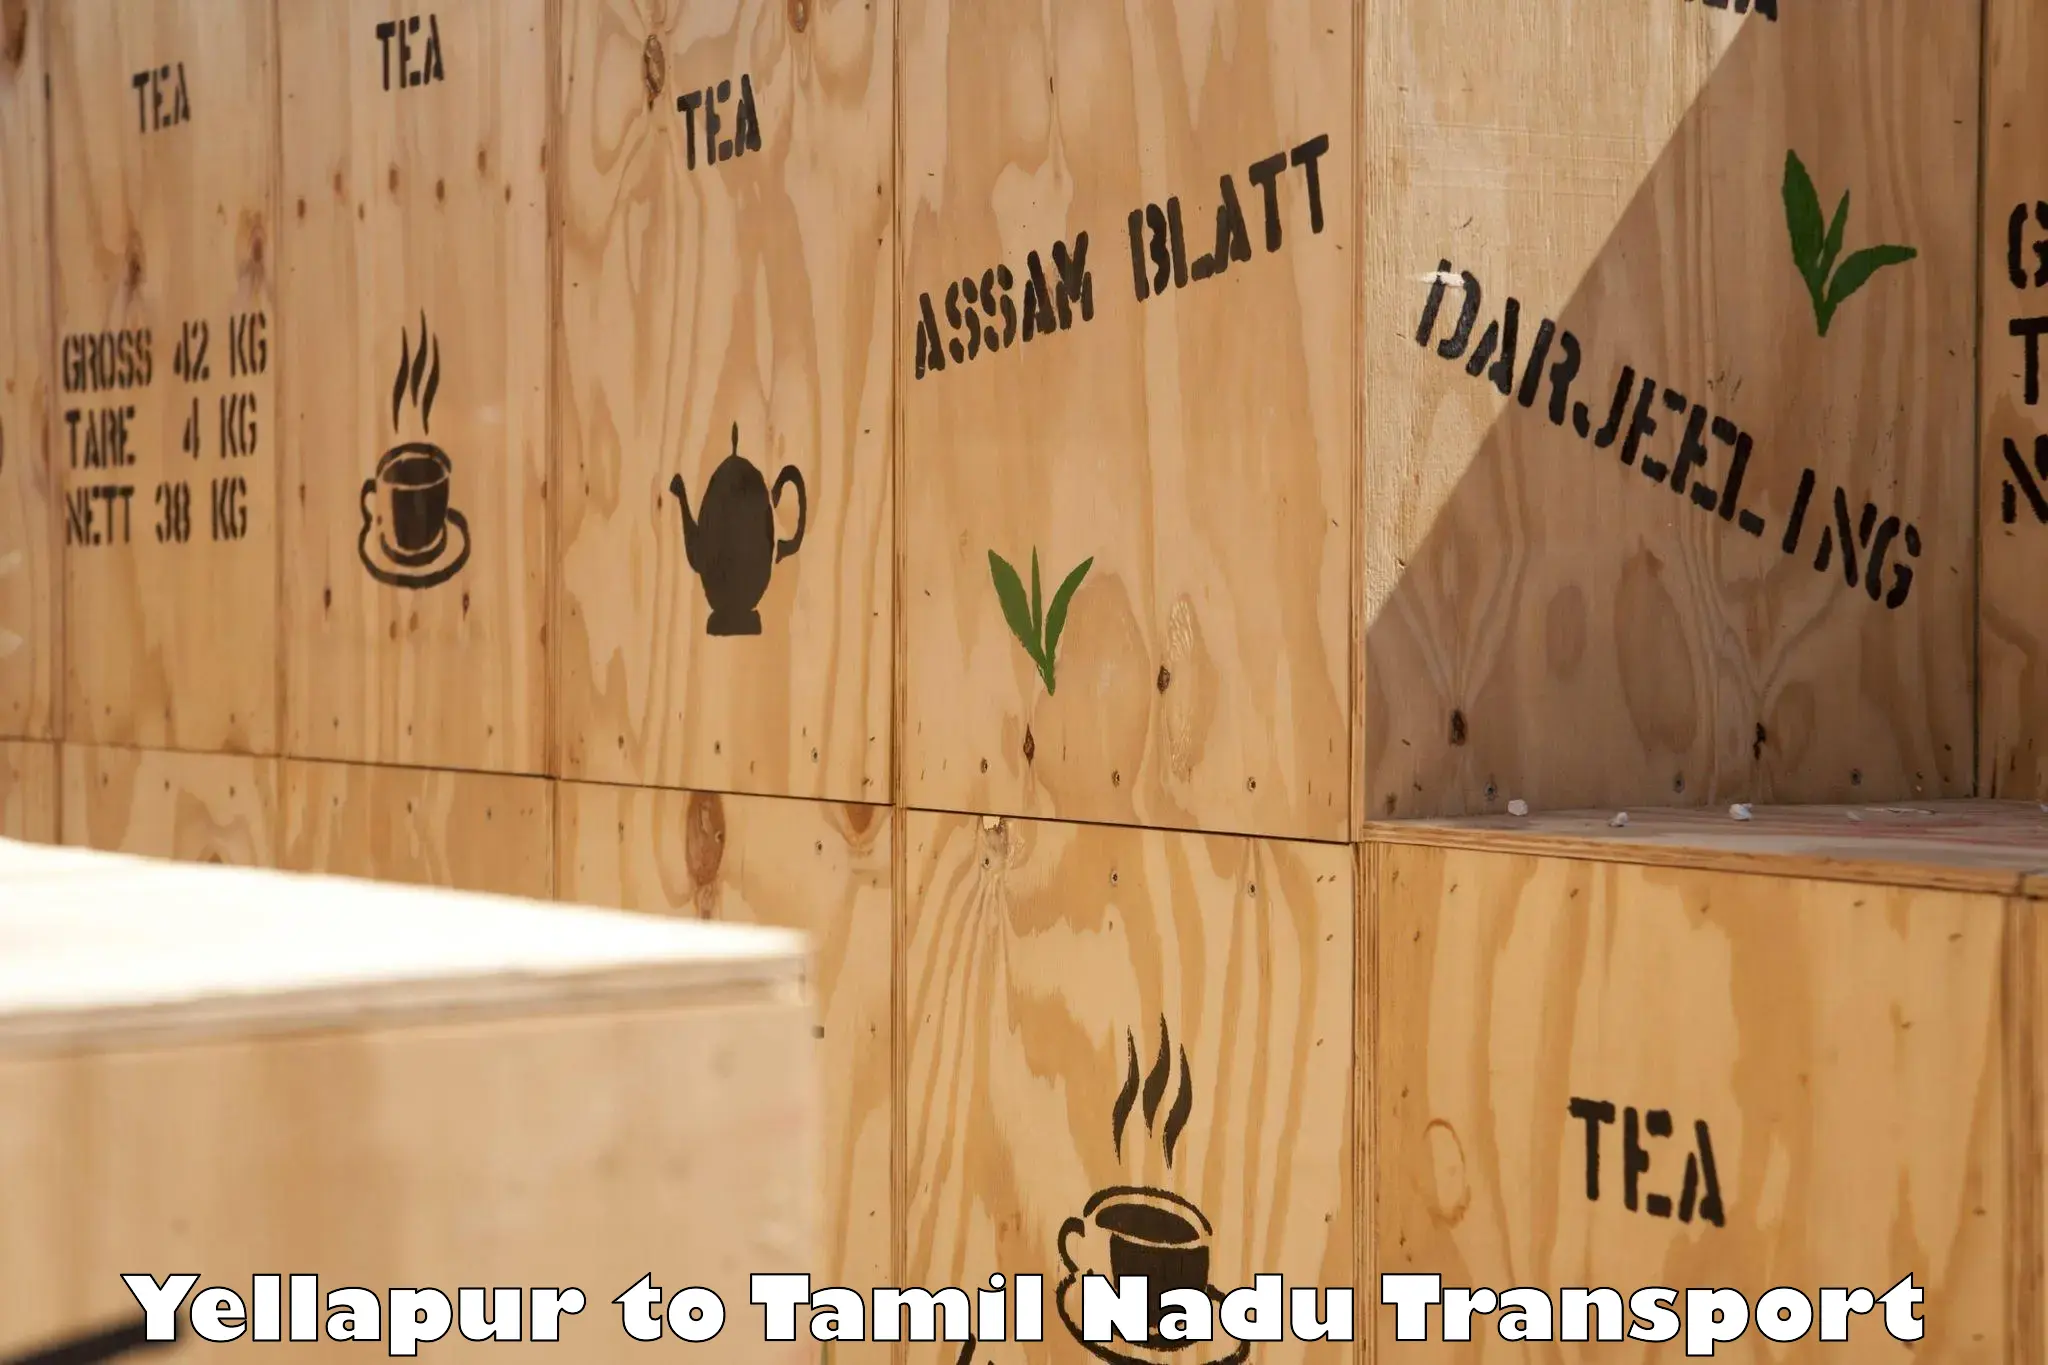 Domestic goods transportation services Yellapur to Tirukalukundram